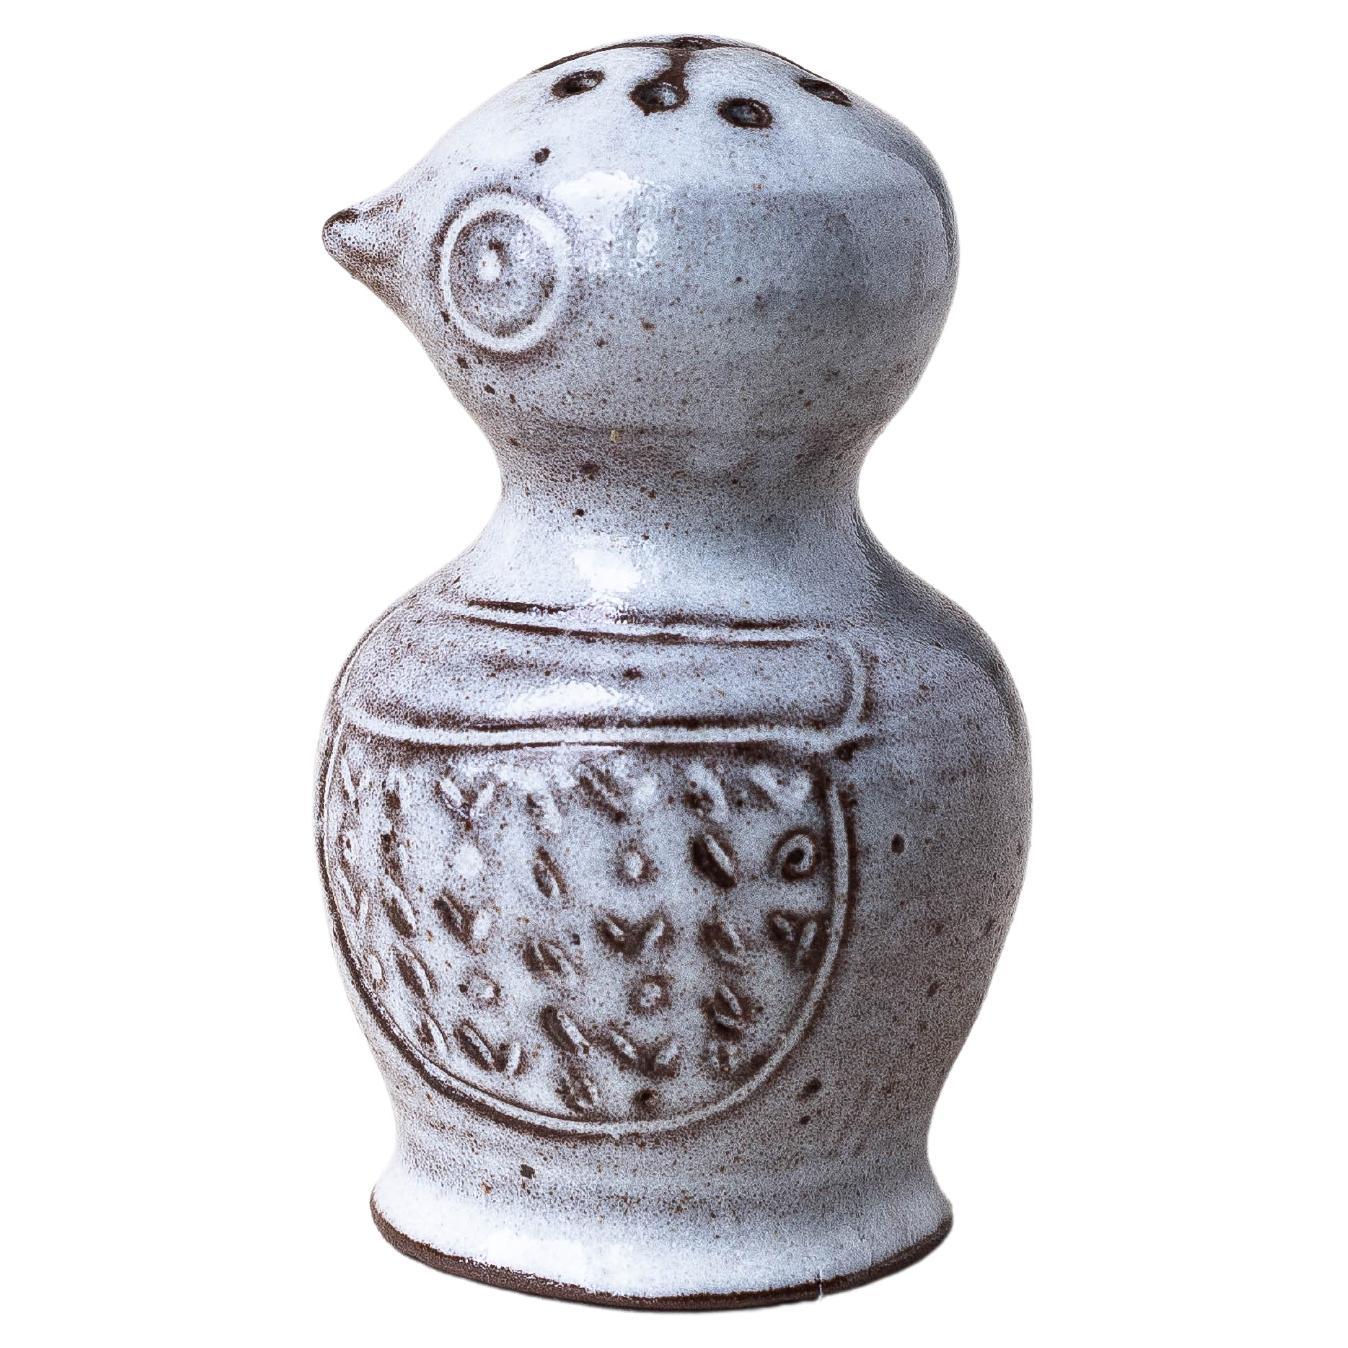 Salt Shaker mit Vogel Eule aus Keramik von Jeanne und Norbert Pierlot, um 1960